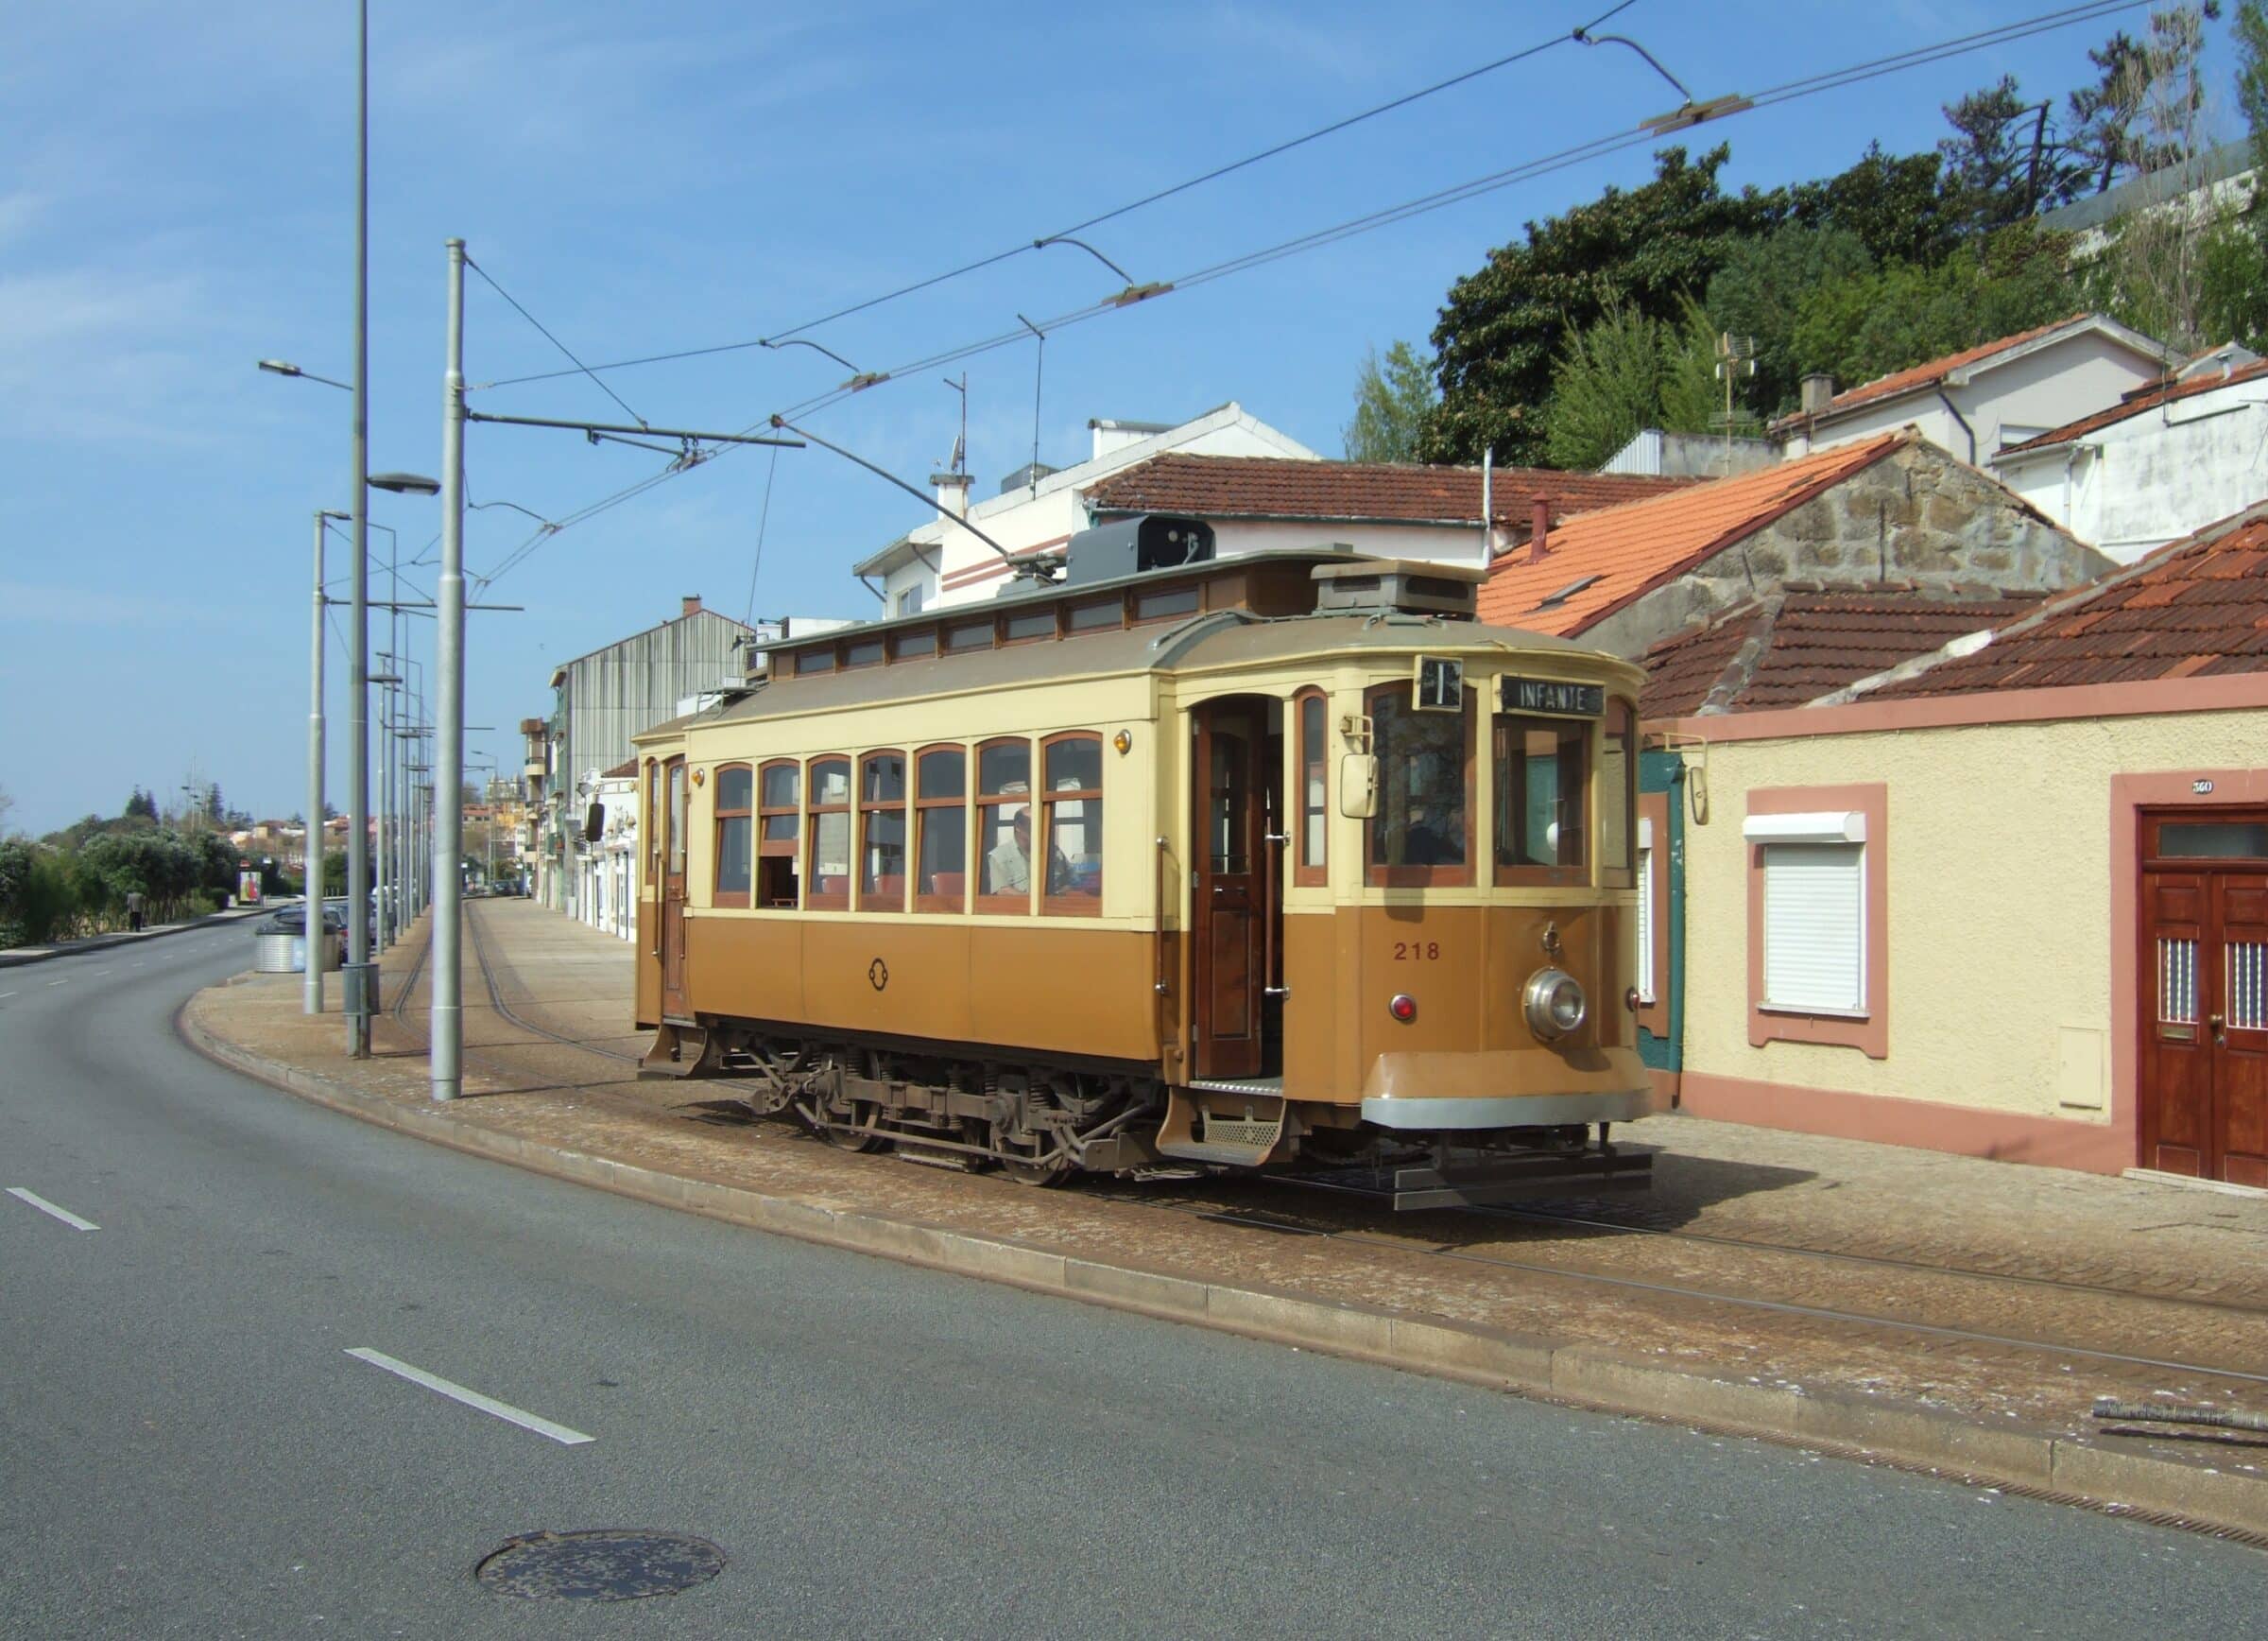 Incidente in Portogallo, vacanza finisce in dramma: uomo di Vittoria travolto da un tram